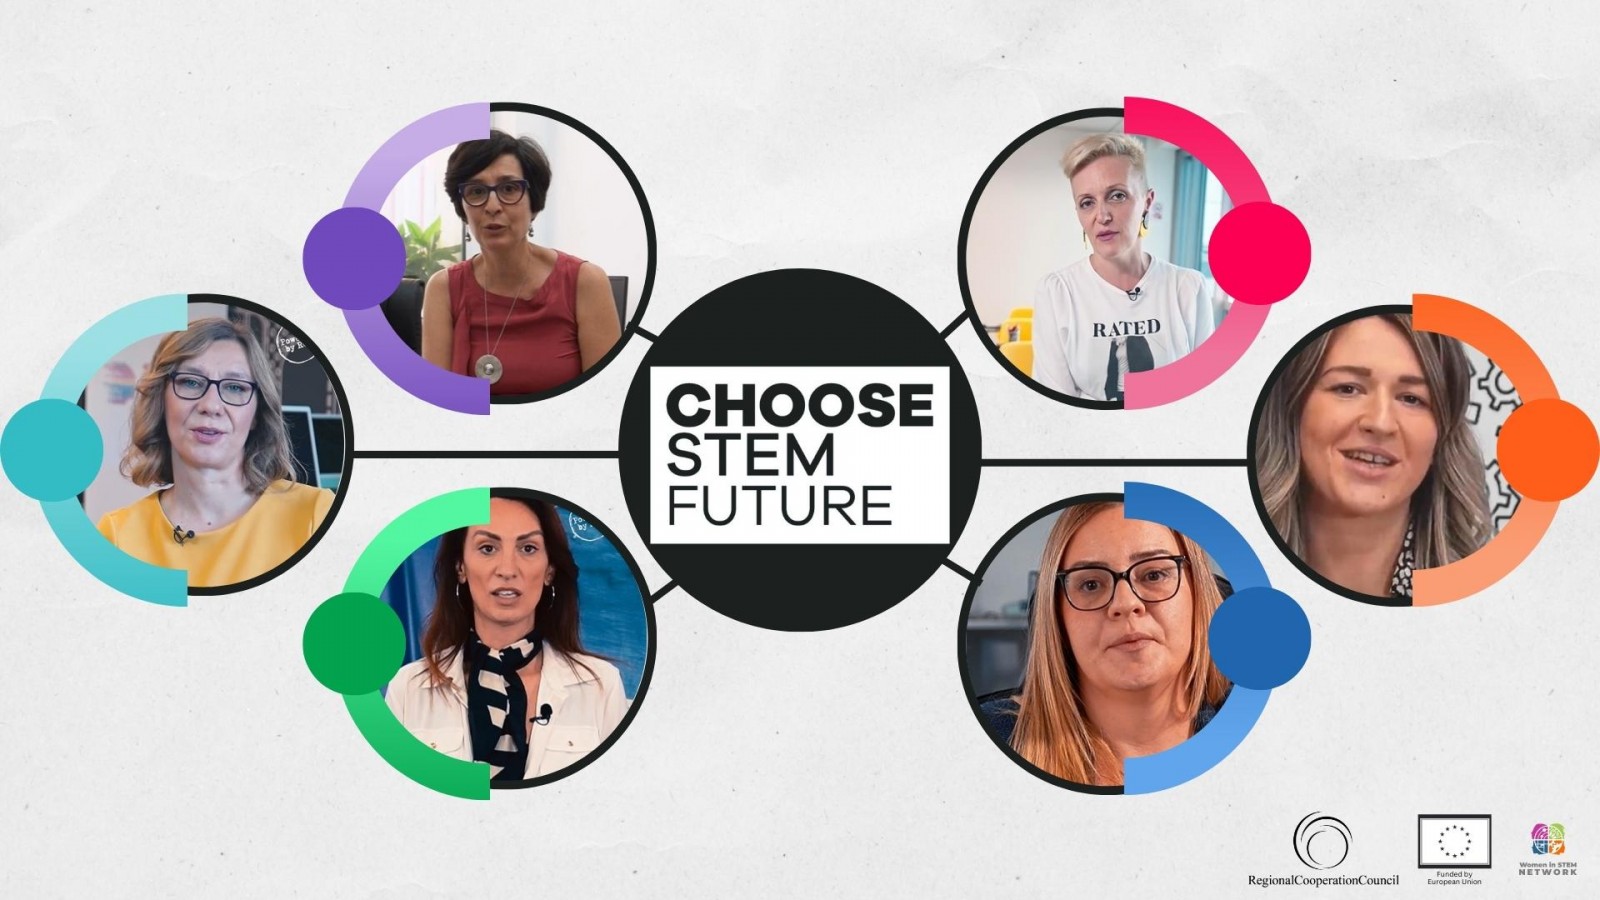 RCC's “Choose STEM future” campaign